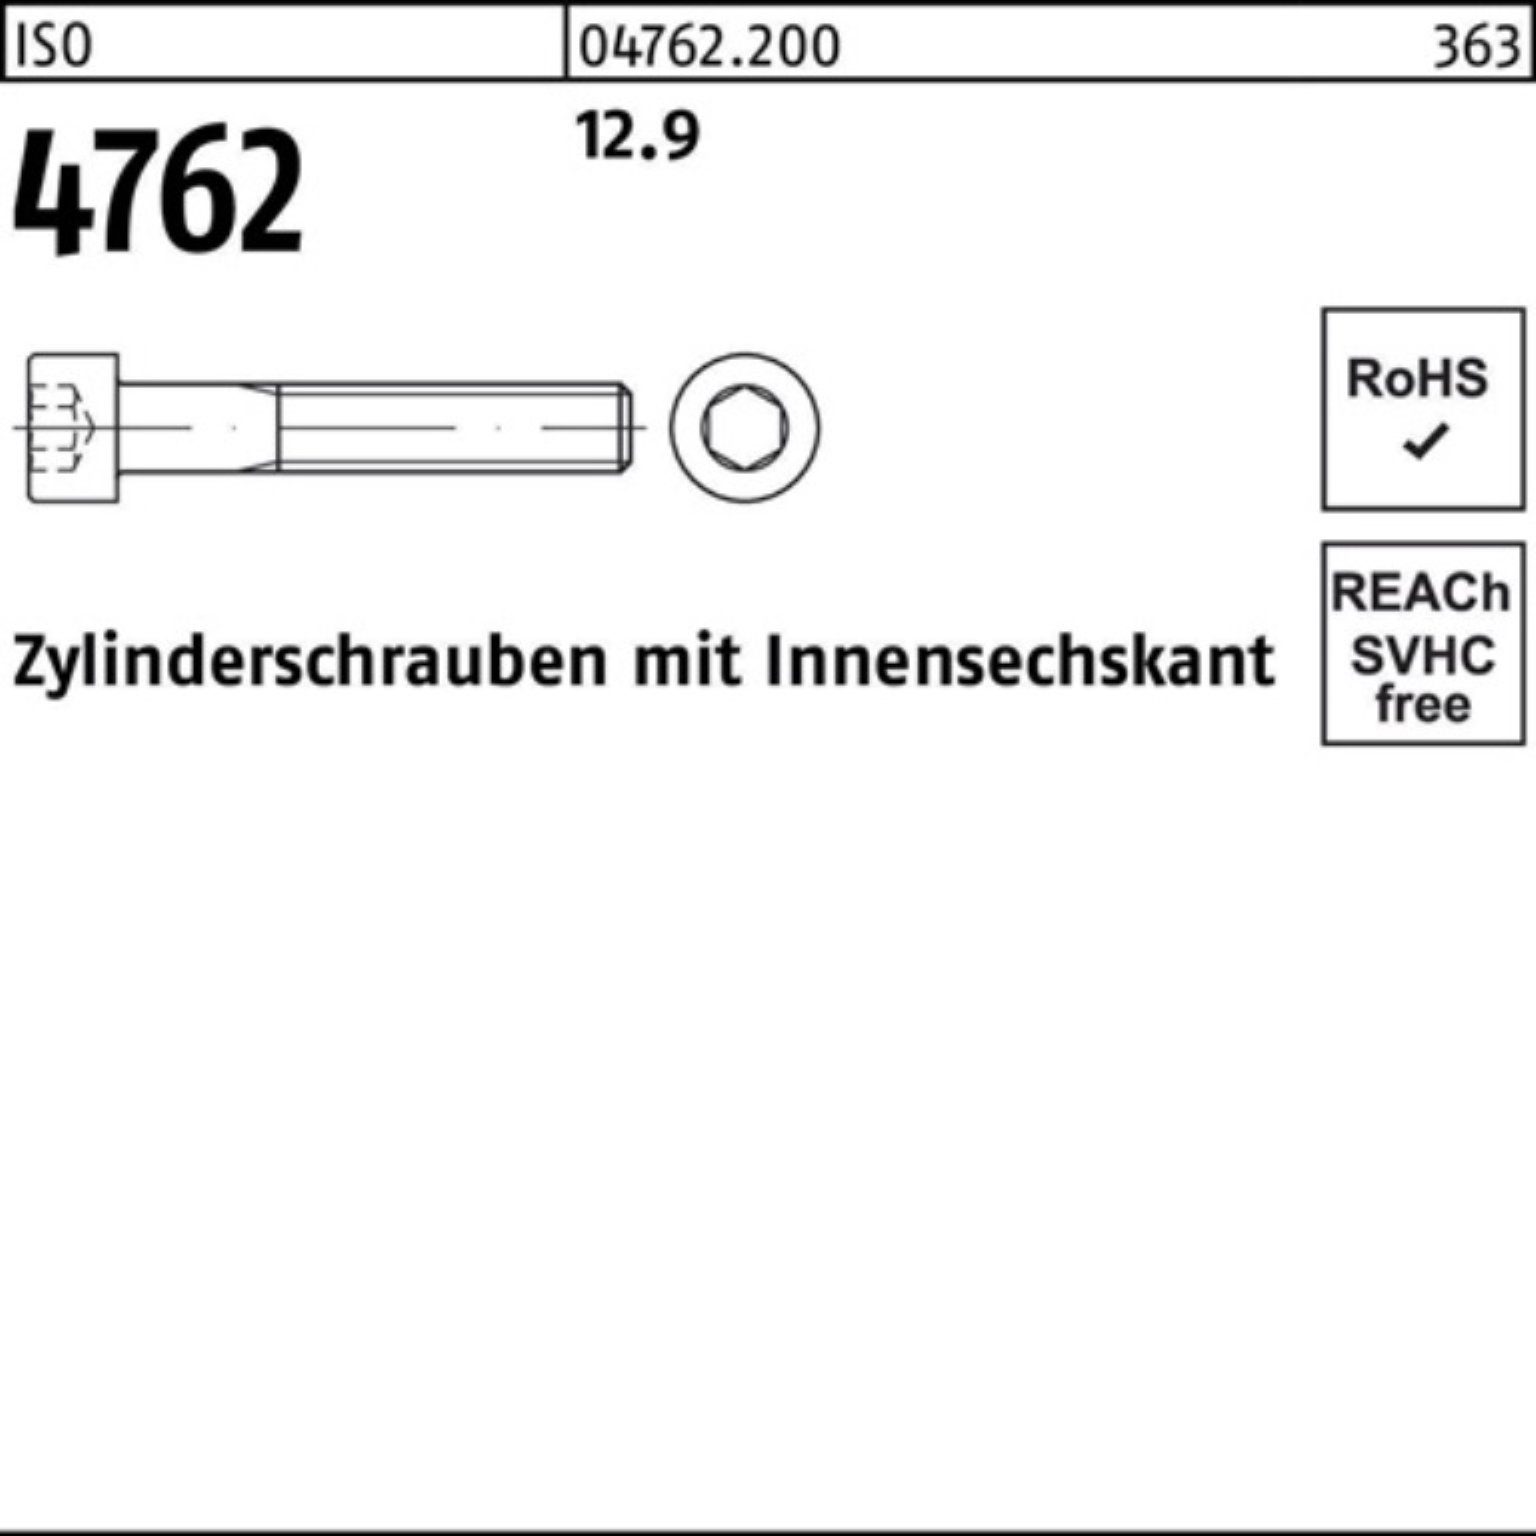 ISO Zylinderschraube Pack Zylinderschraube 240 Innen-6kt M22x 1 Stück 4762 12.9 Reyher 100er